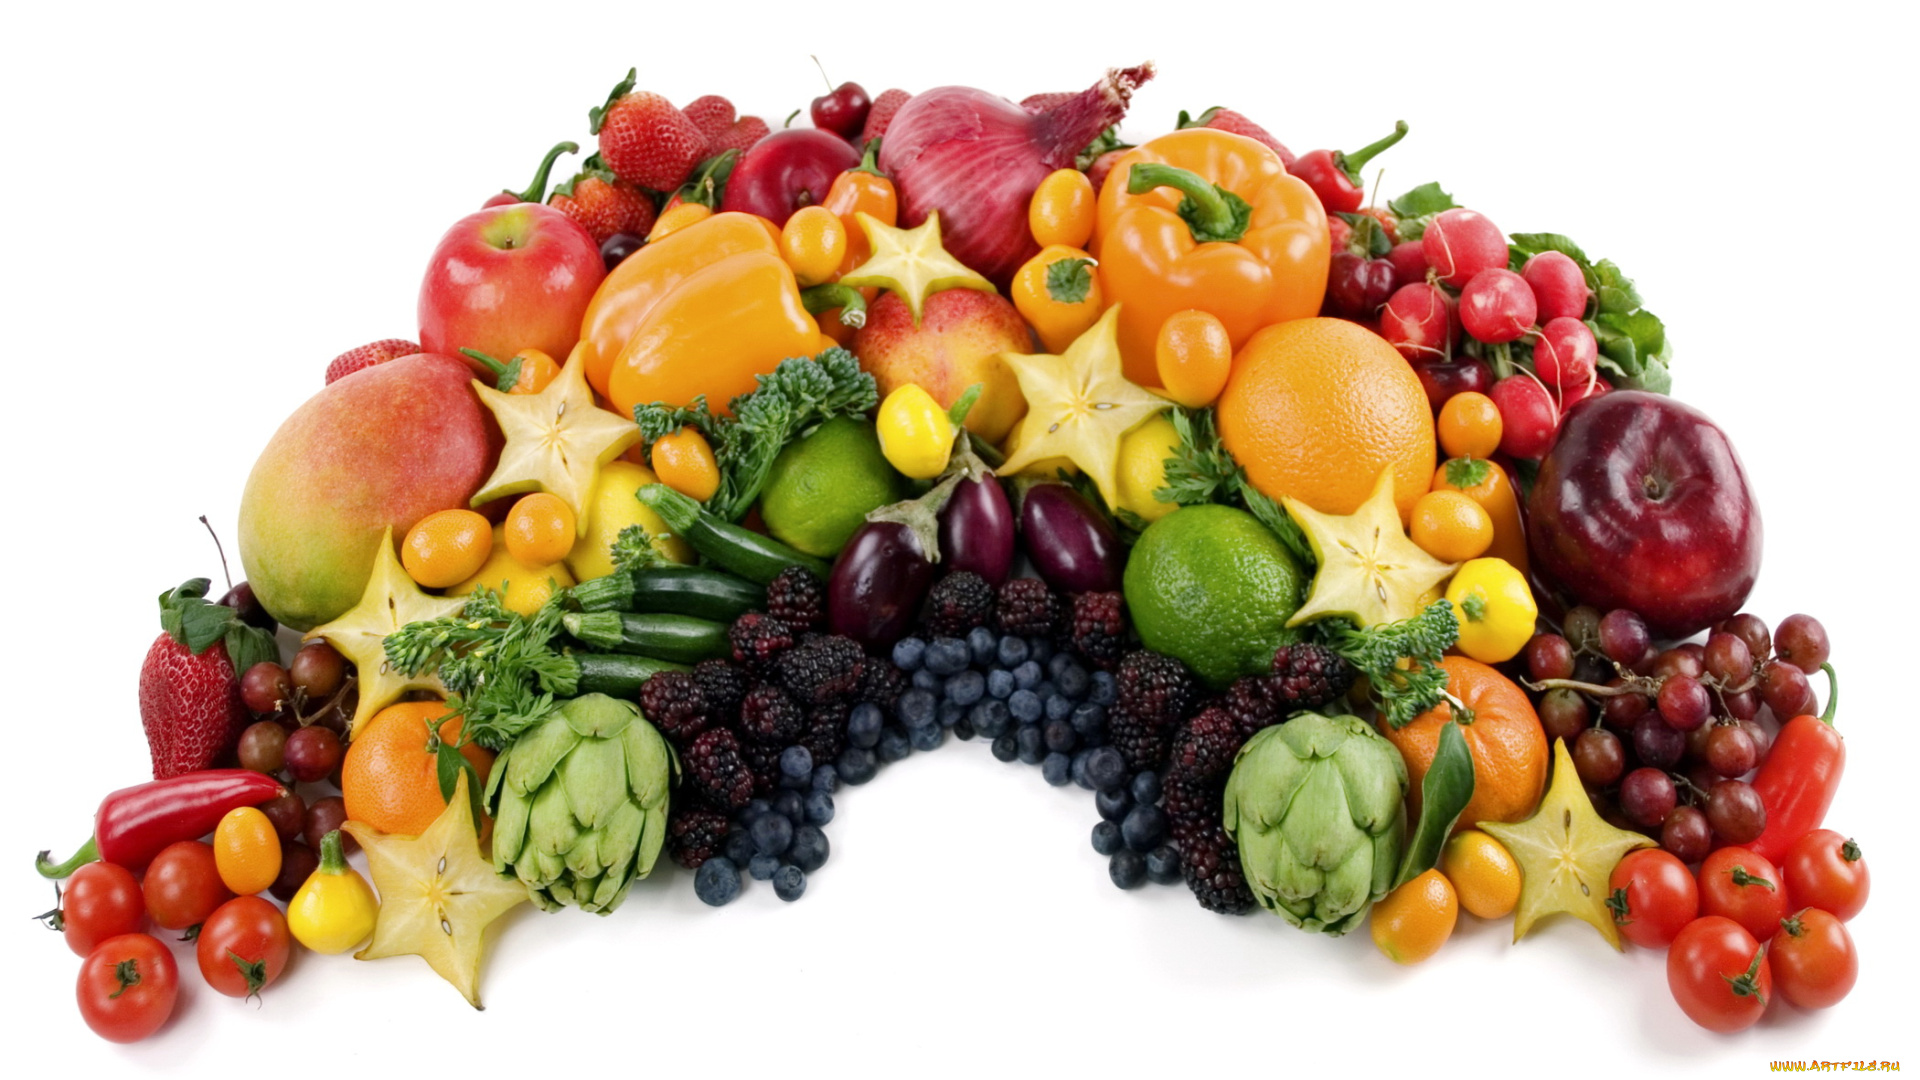 еда, фрукты, овощи, вместе, перец, помидоры, баклажаны, виноград, яблоки, груши, томаты